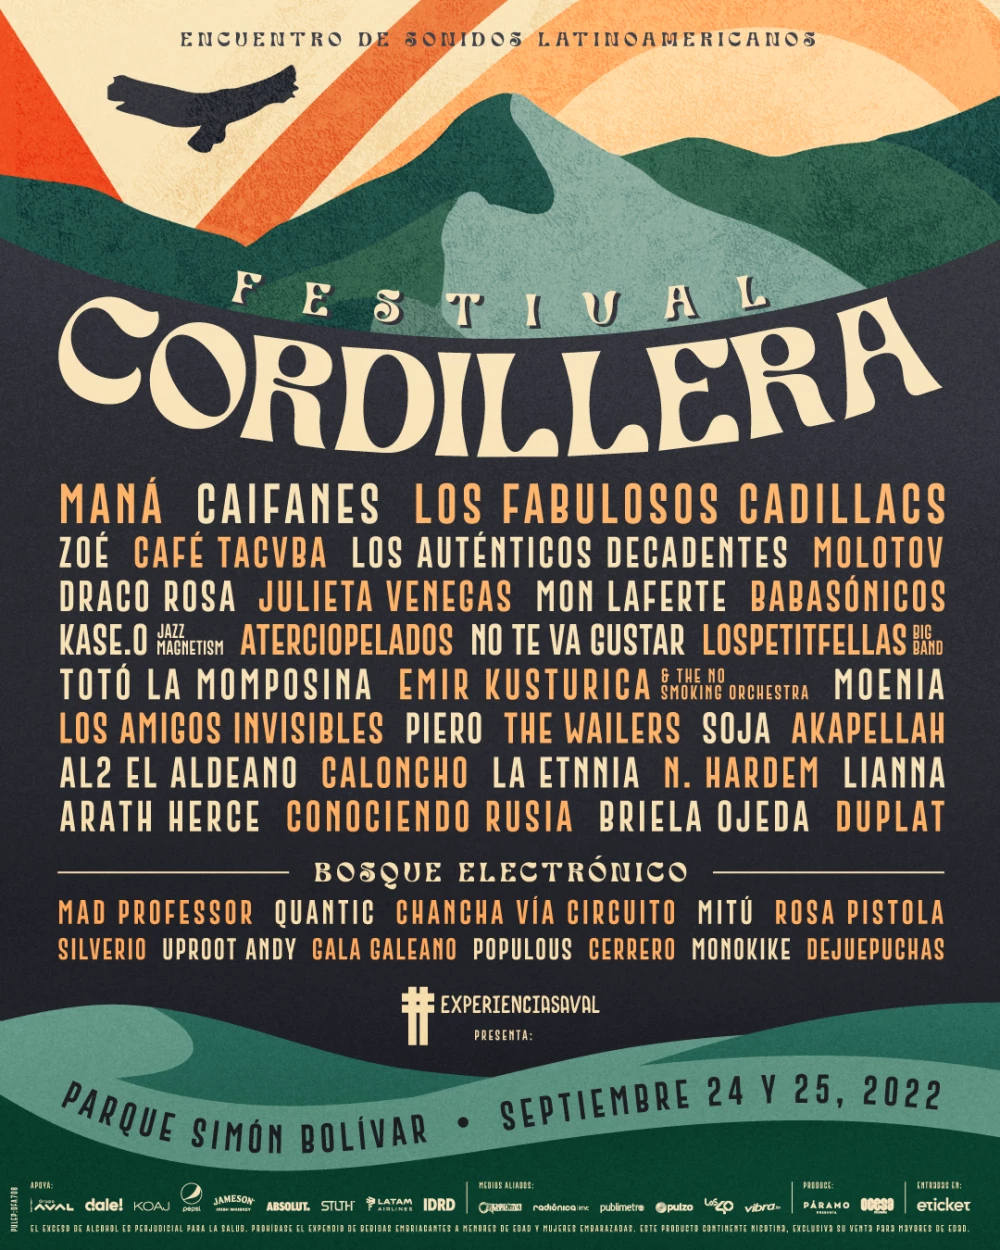 Festival Cordillera: conozca los artistas que harán parte, los precios y las fechas del evento